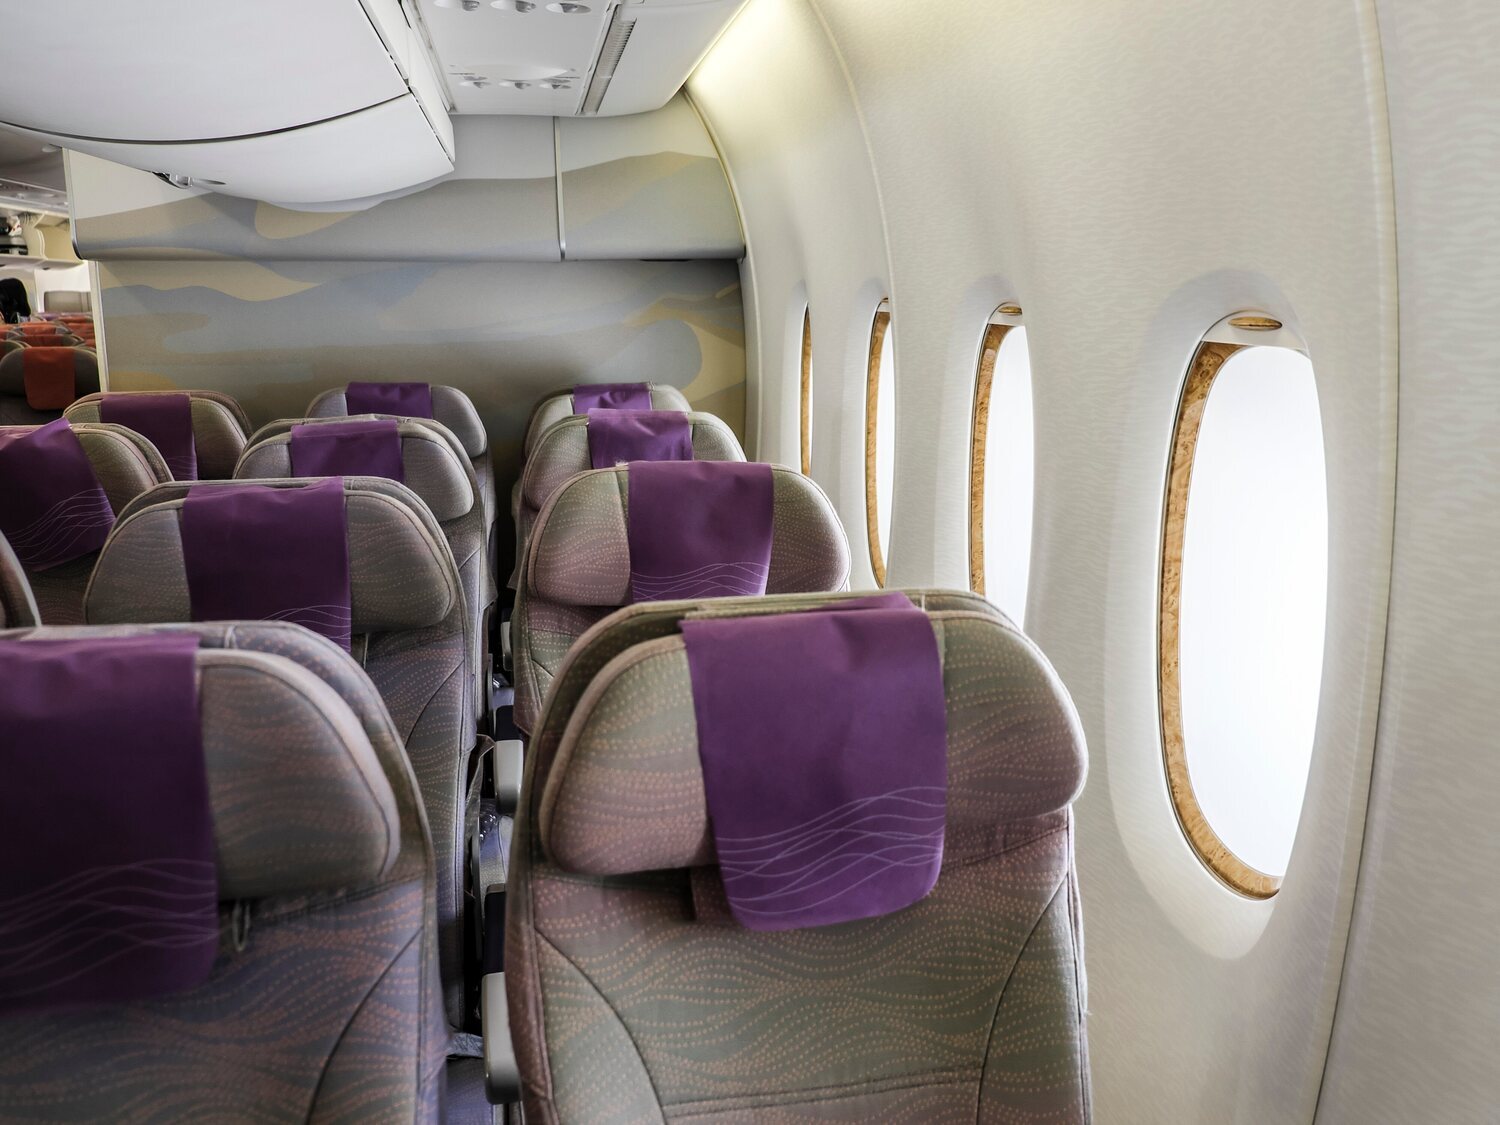 Una aerolínea crea una zona 'only adults' en sus aviones